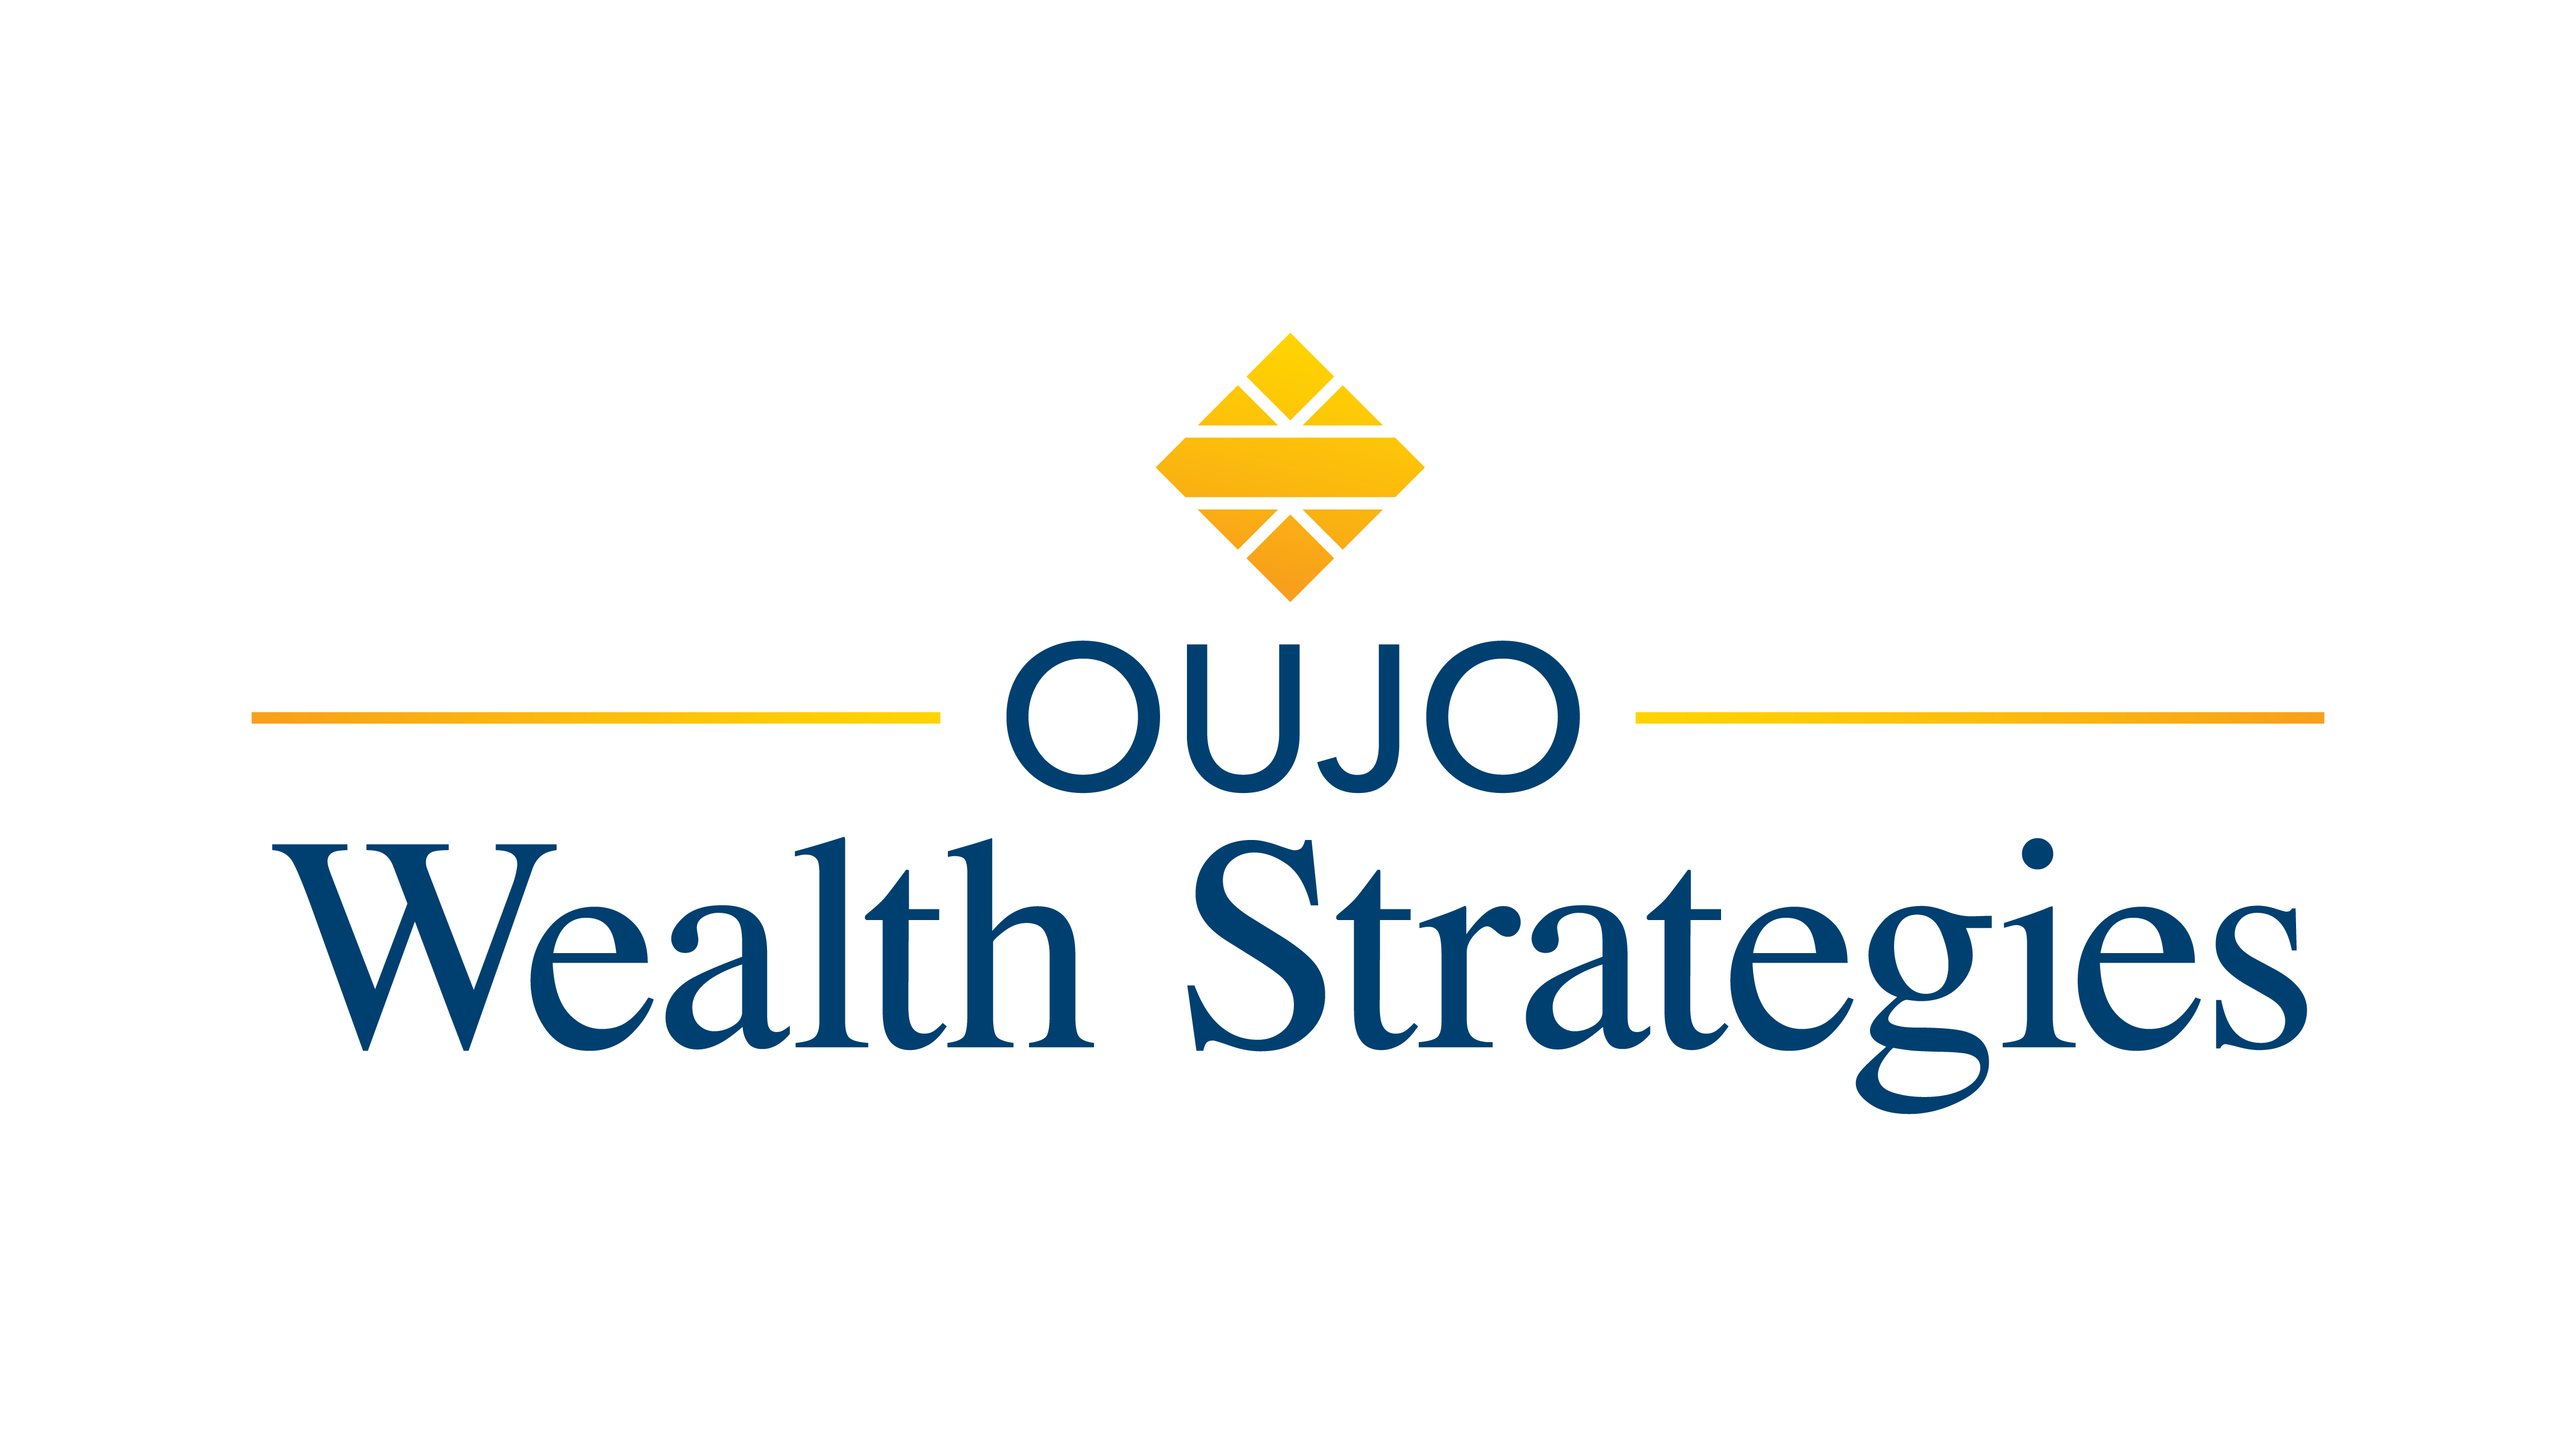 Oujo Wealth Strategies